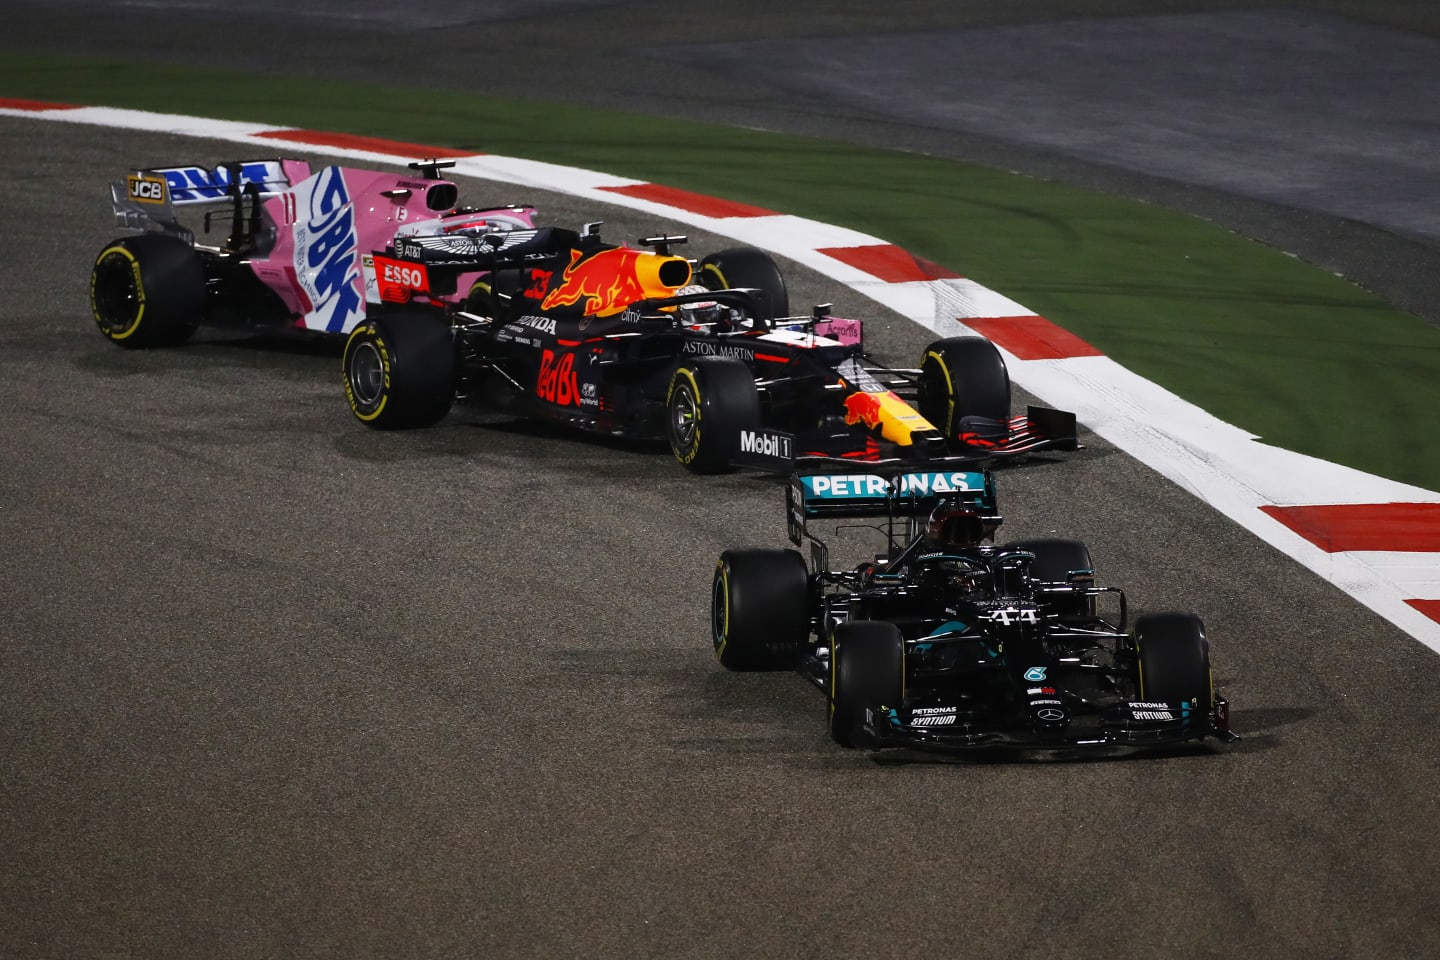 BAHRAIN, BAHRAIN - NOVEMBER 29: Lewis Hamilton of Great Britain driving the (44) Mercedes AMG